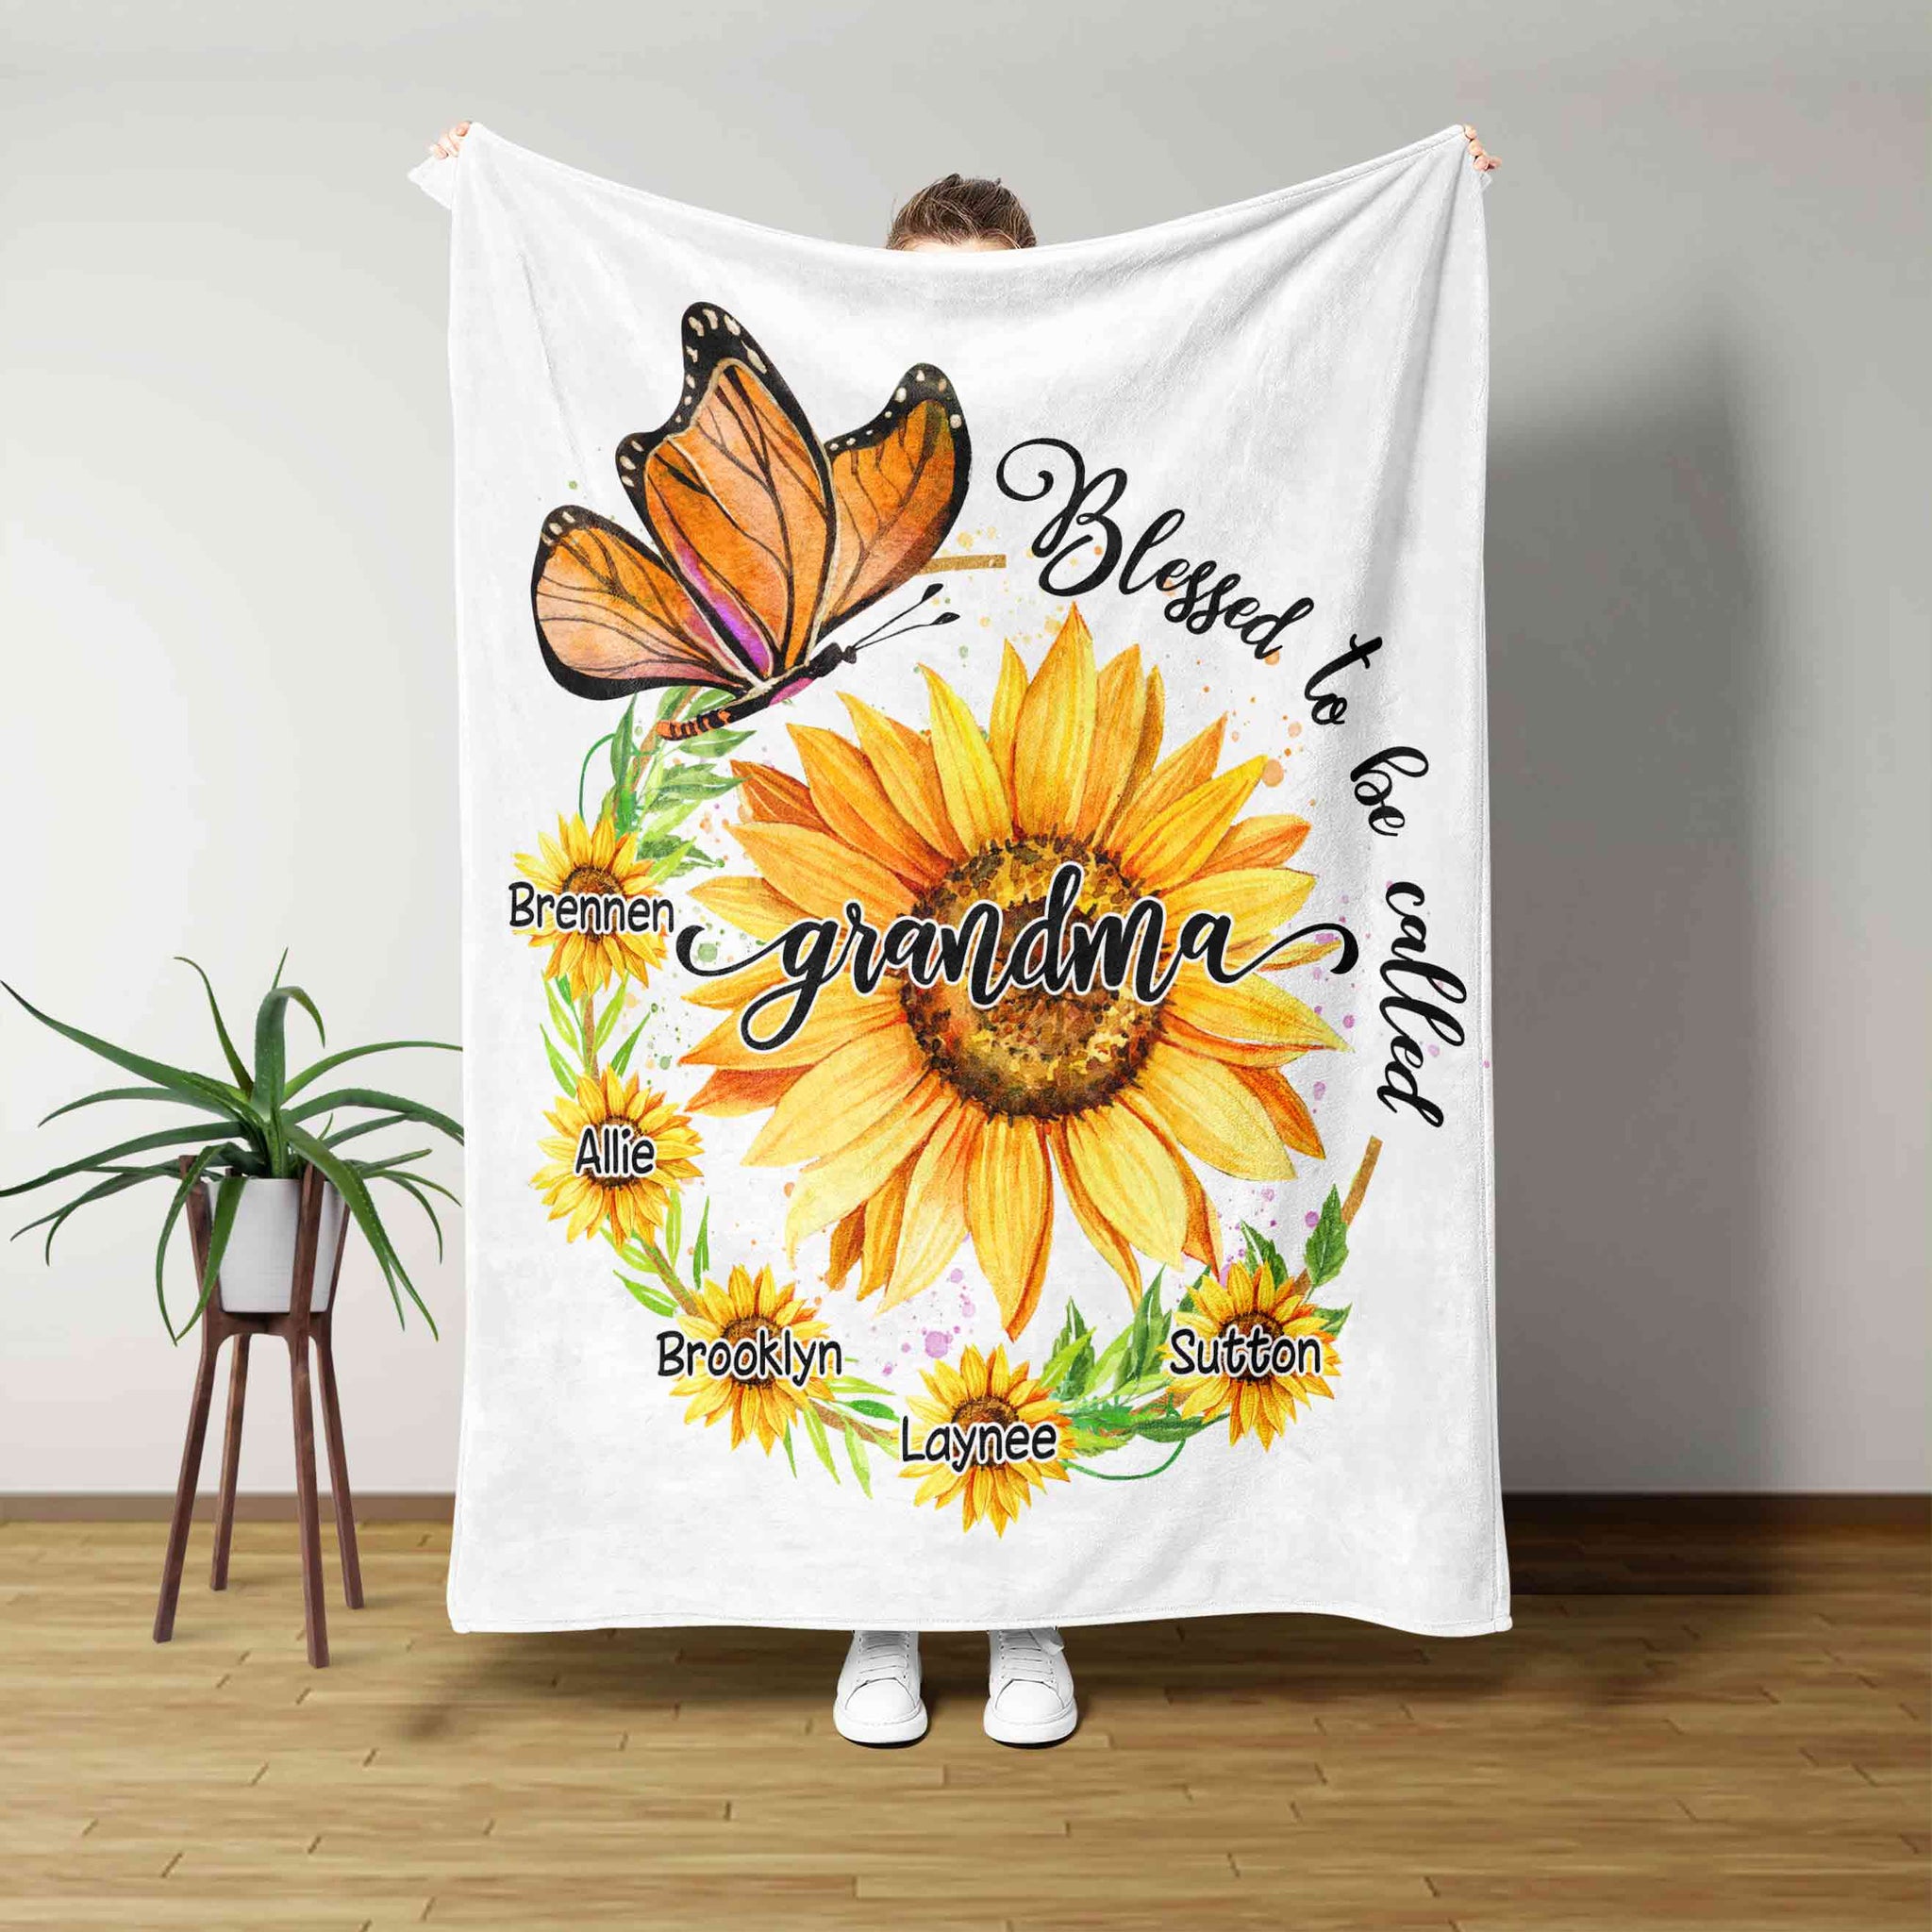 Grandma Blanket, Butterfly Blanket, Sunflower Blanket, Family Blanket, Custom Name Blanket, Gift Blanket